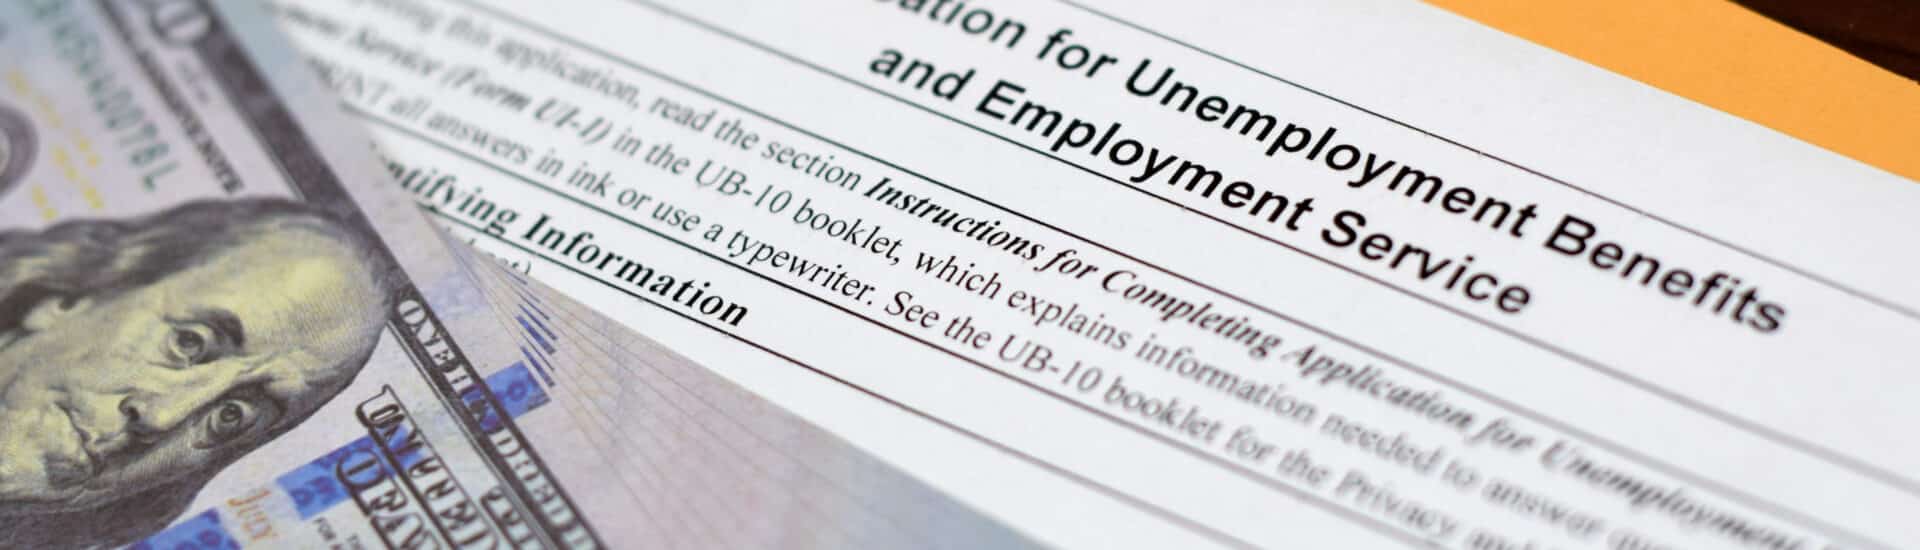 negacion-beneficios-de-desempleo